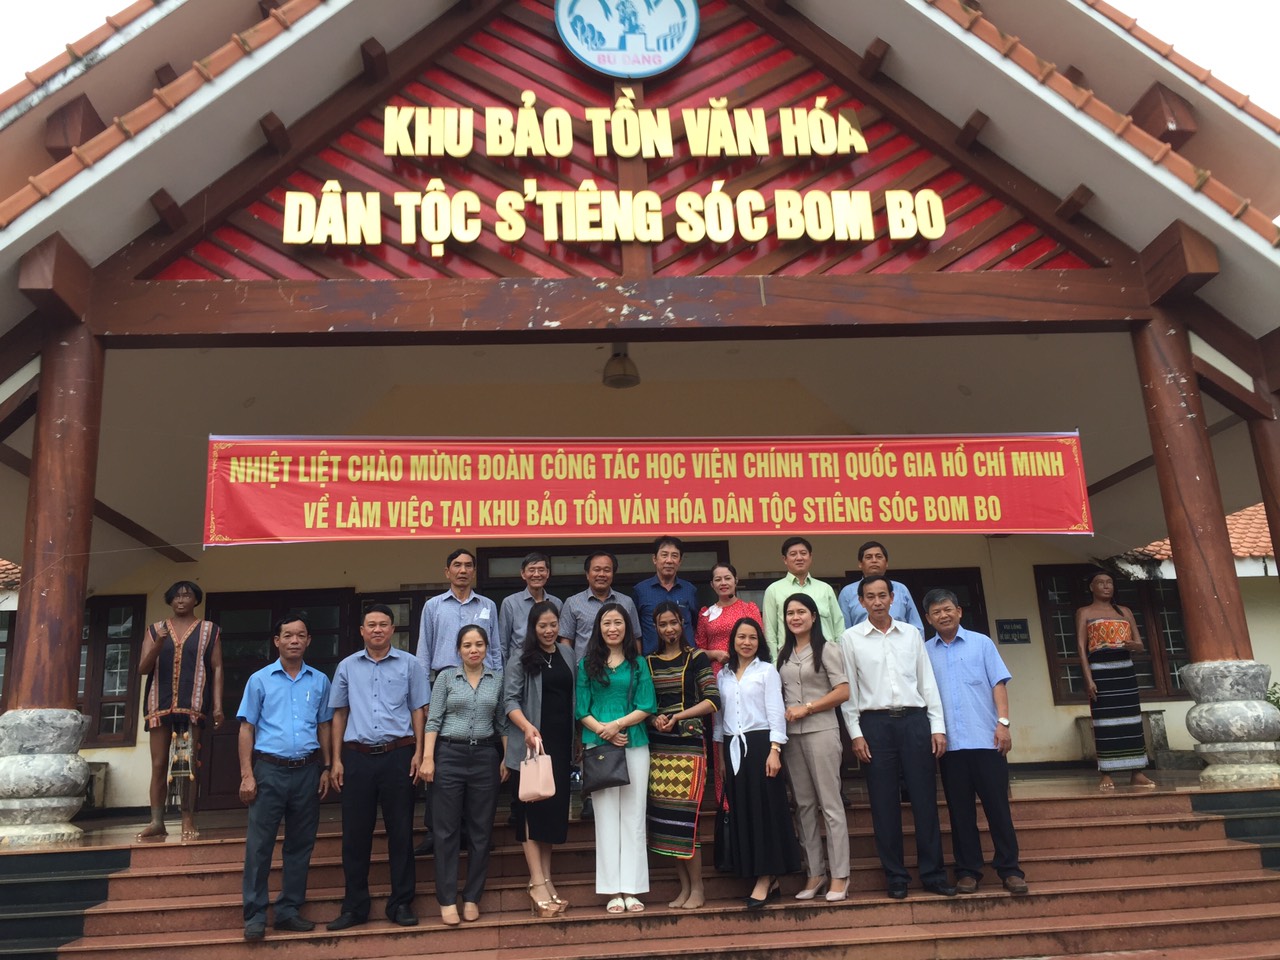 Đoàn công tác của Học viện Chính trị quốc gia Hồ Chí Minh chụp hình lưu niệm tại khu bảo tồn văn hóa dân tộc Stiêng sóc Bom Bo, huyện Bù Đăng